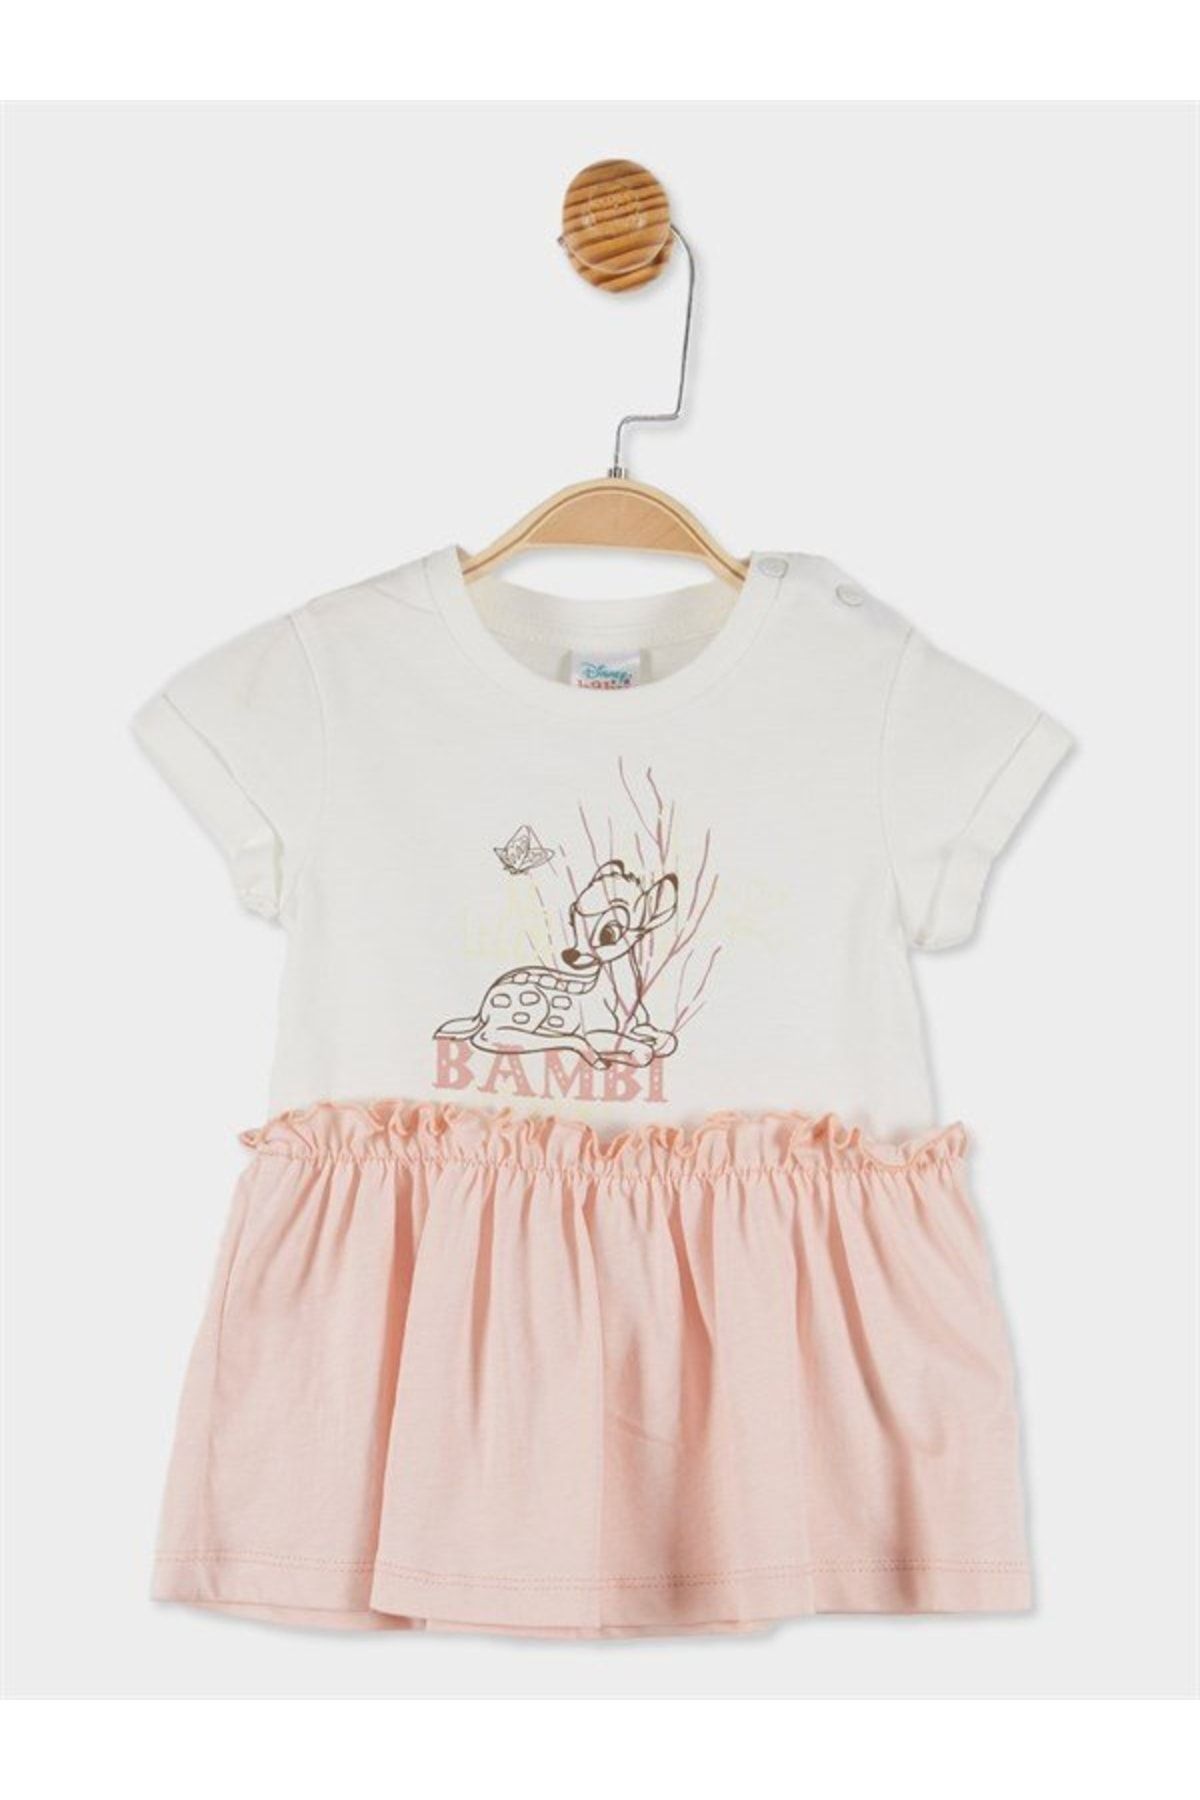 DİSNEY Bambi Lisanslı Kız Bebek Kısa Kollu Elbise